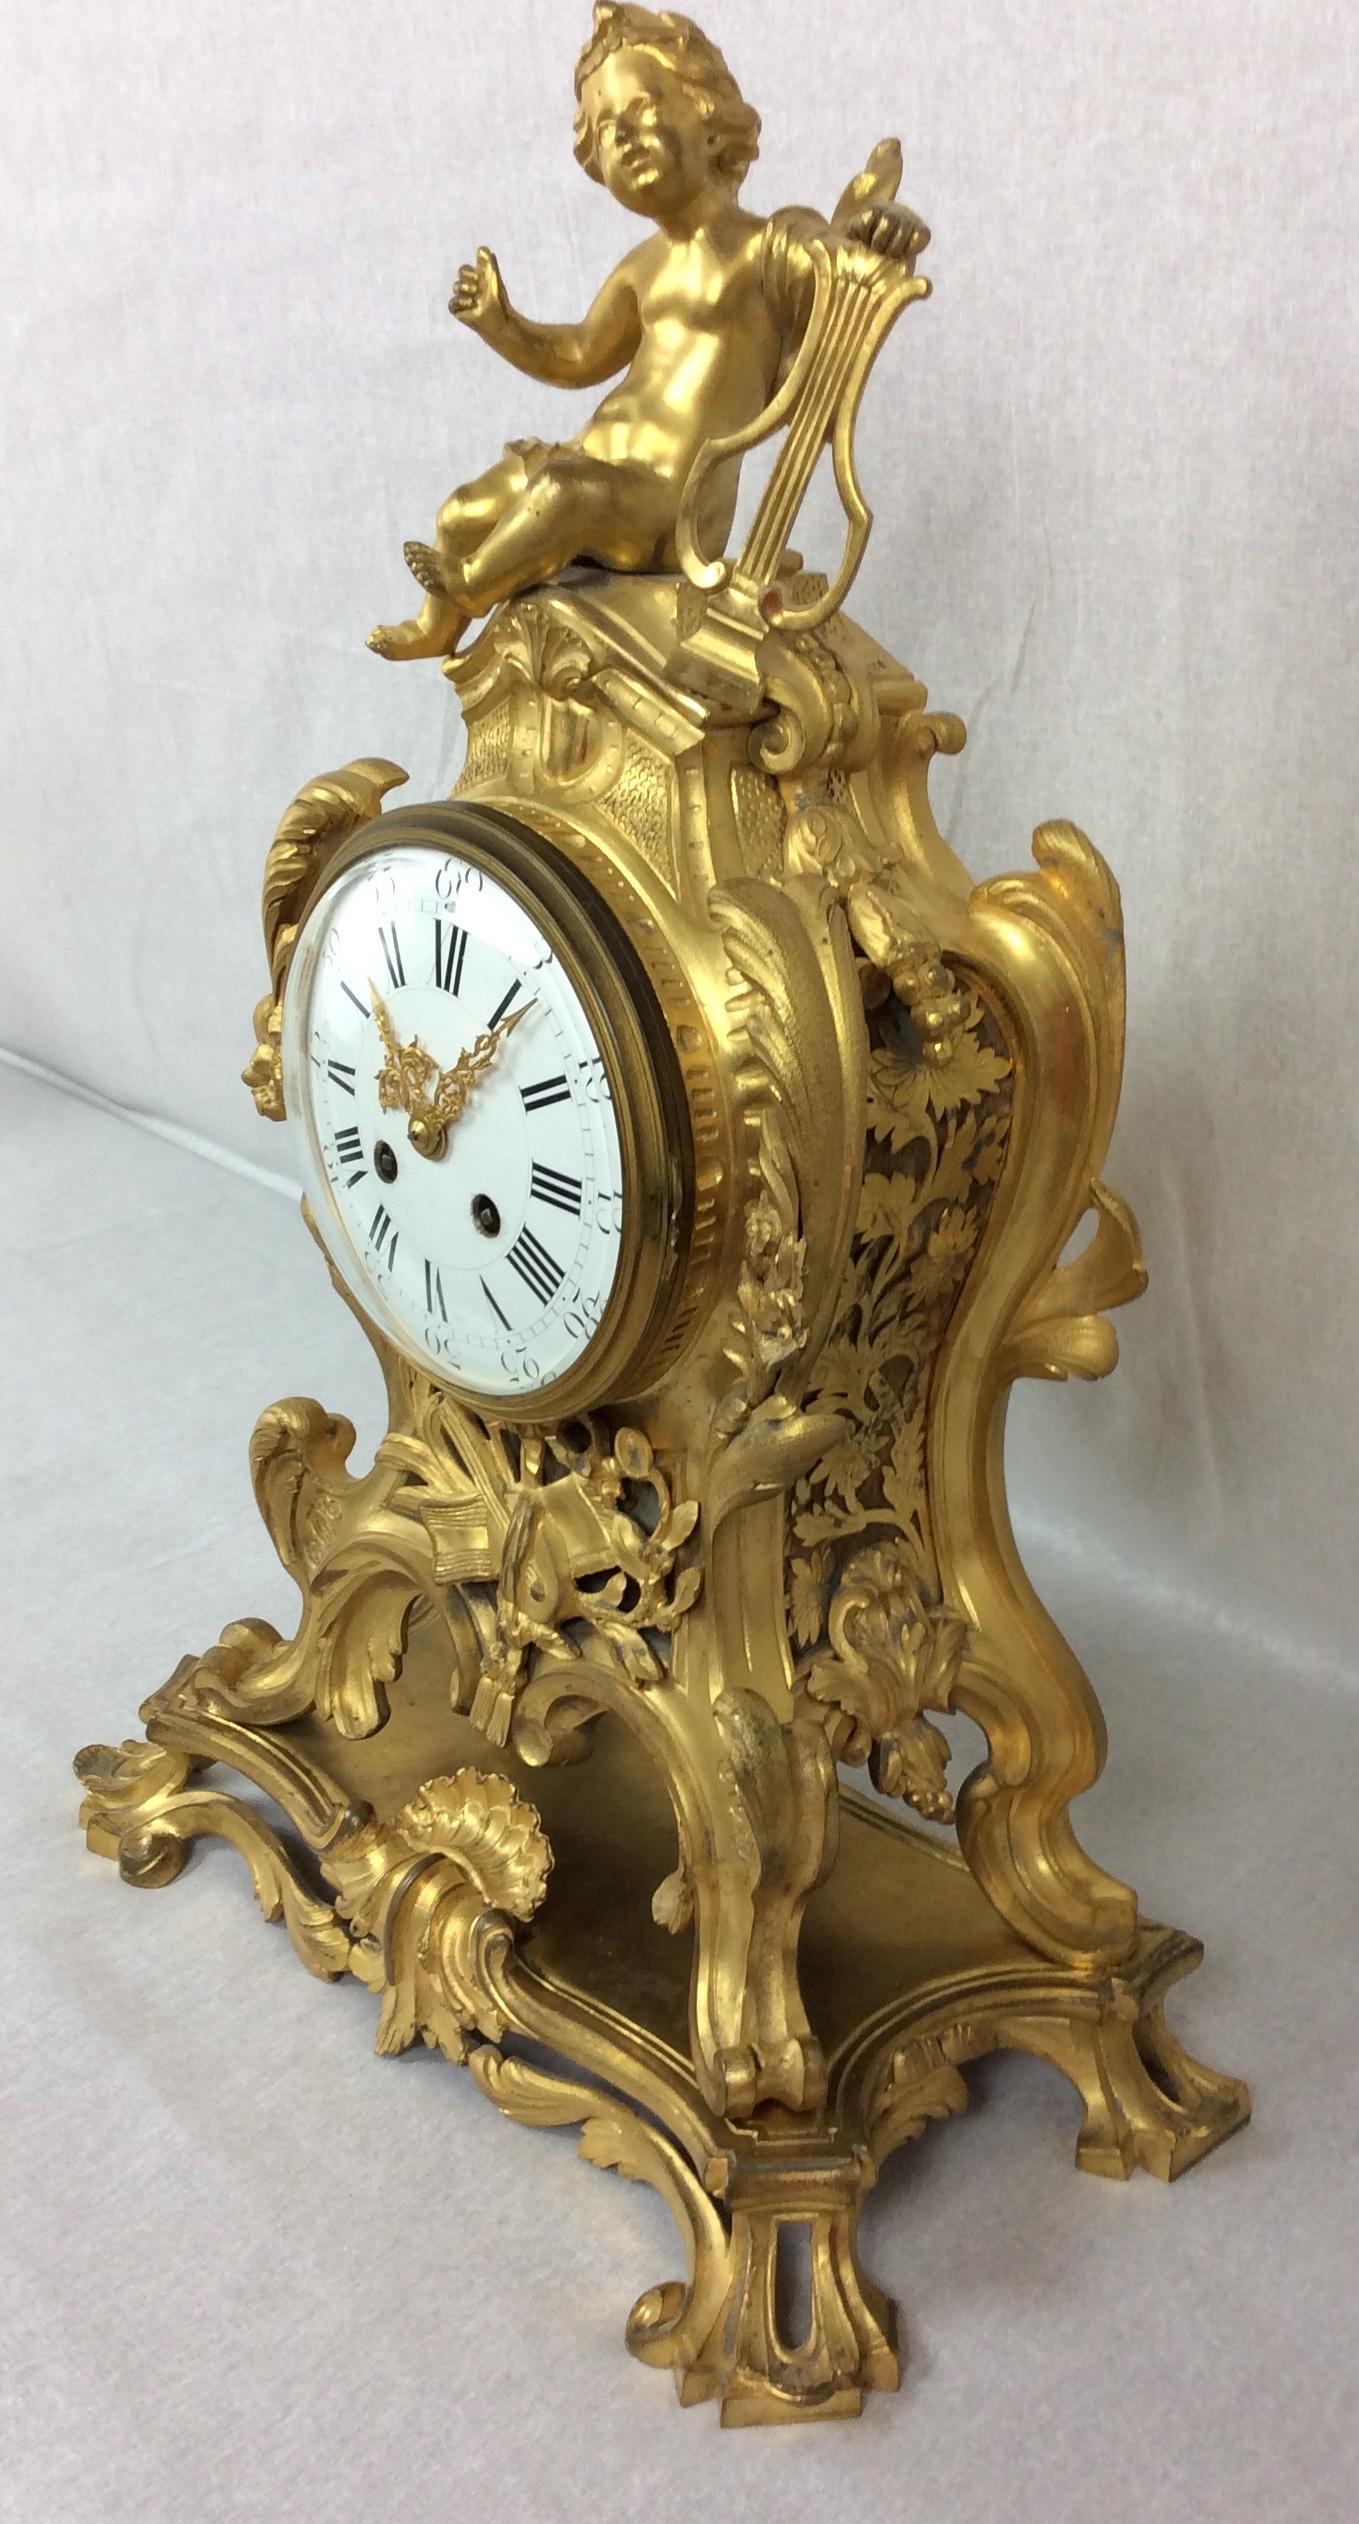 12 de 19
Un très grand et fin ensemble d'horloges françaises anciennes, vers 1880. De conception rococo à la manière de Juste Aurele Meissonier, il est audacieusement modelé en bronze doré. La forme en trou de serrure avec des épaules en feuilles